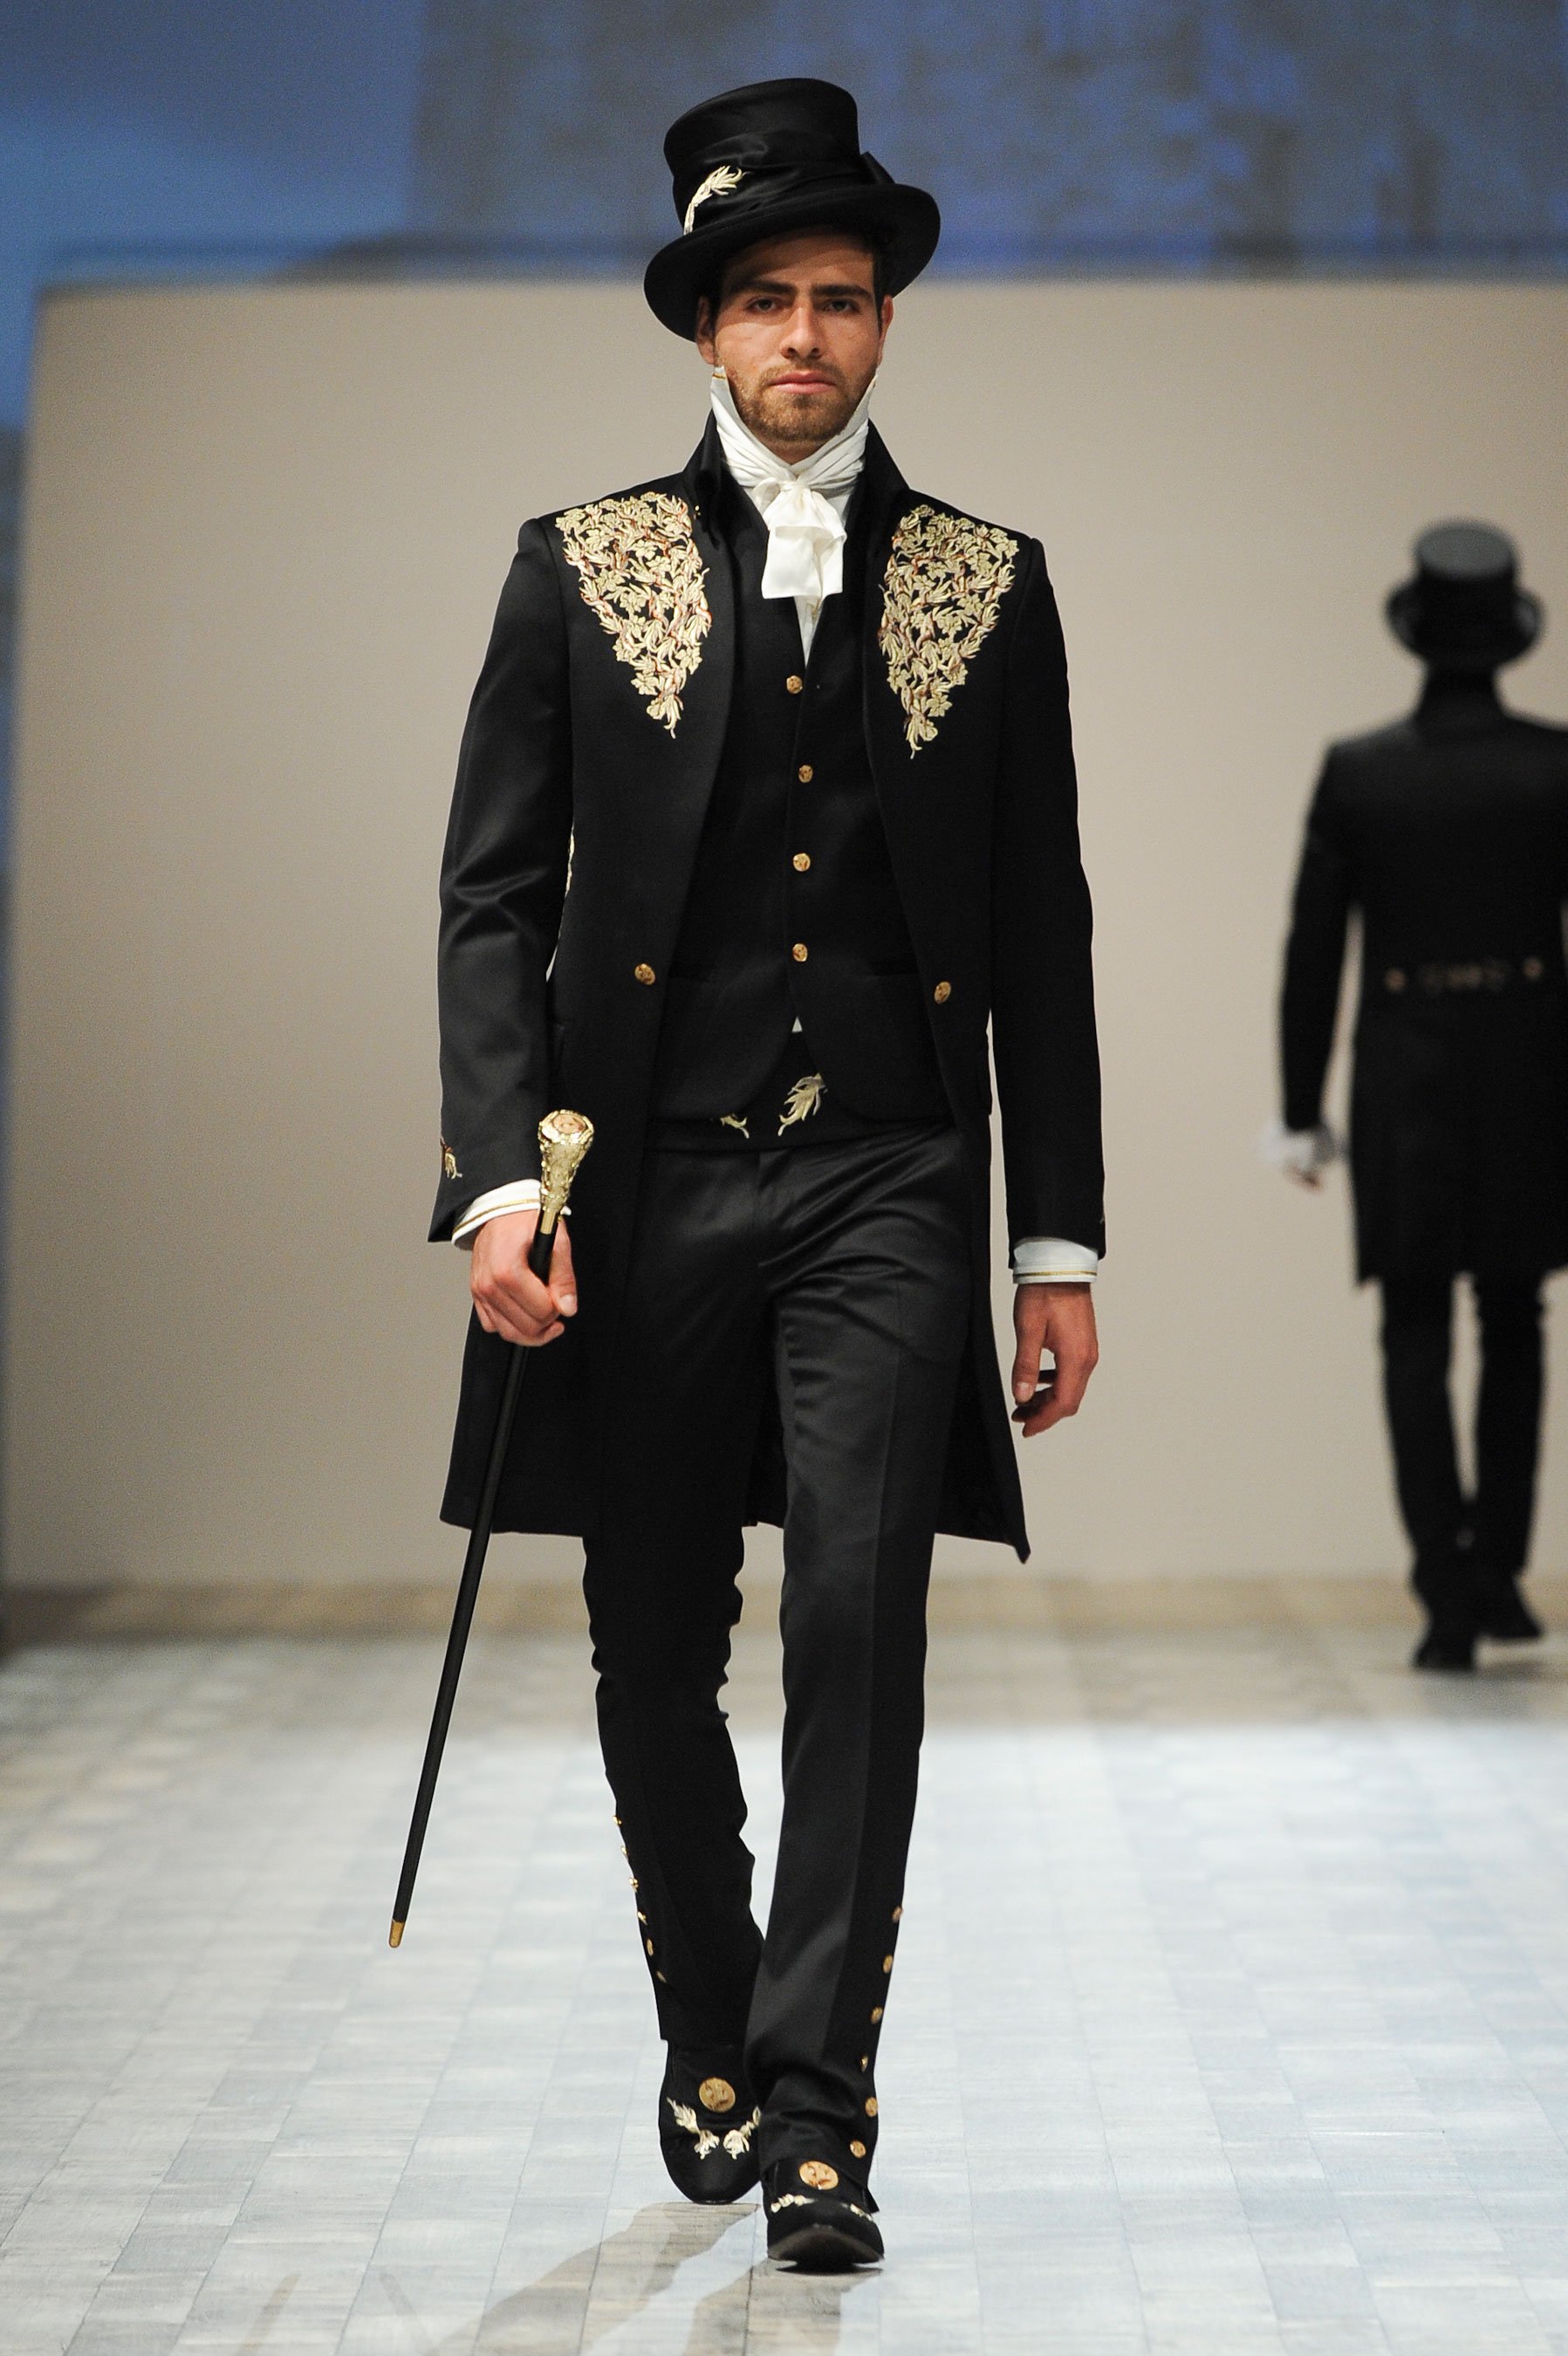 法国贵族男性服饰图片